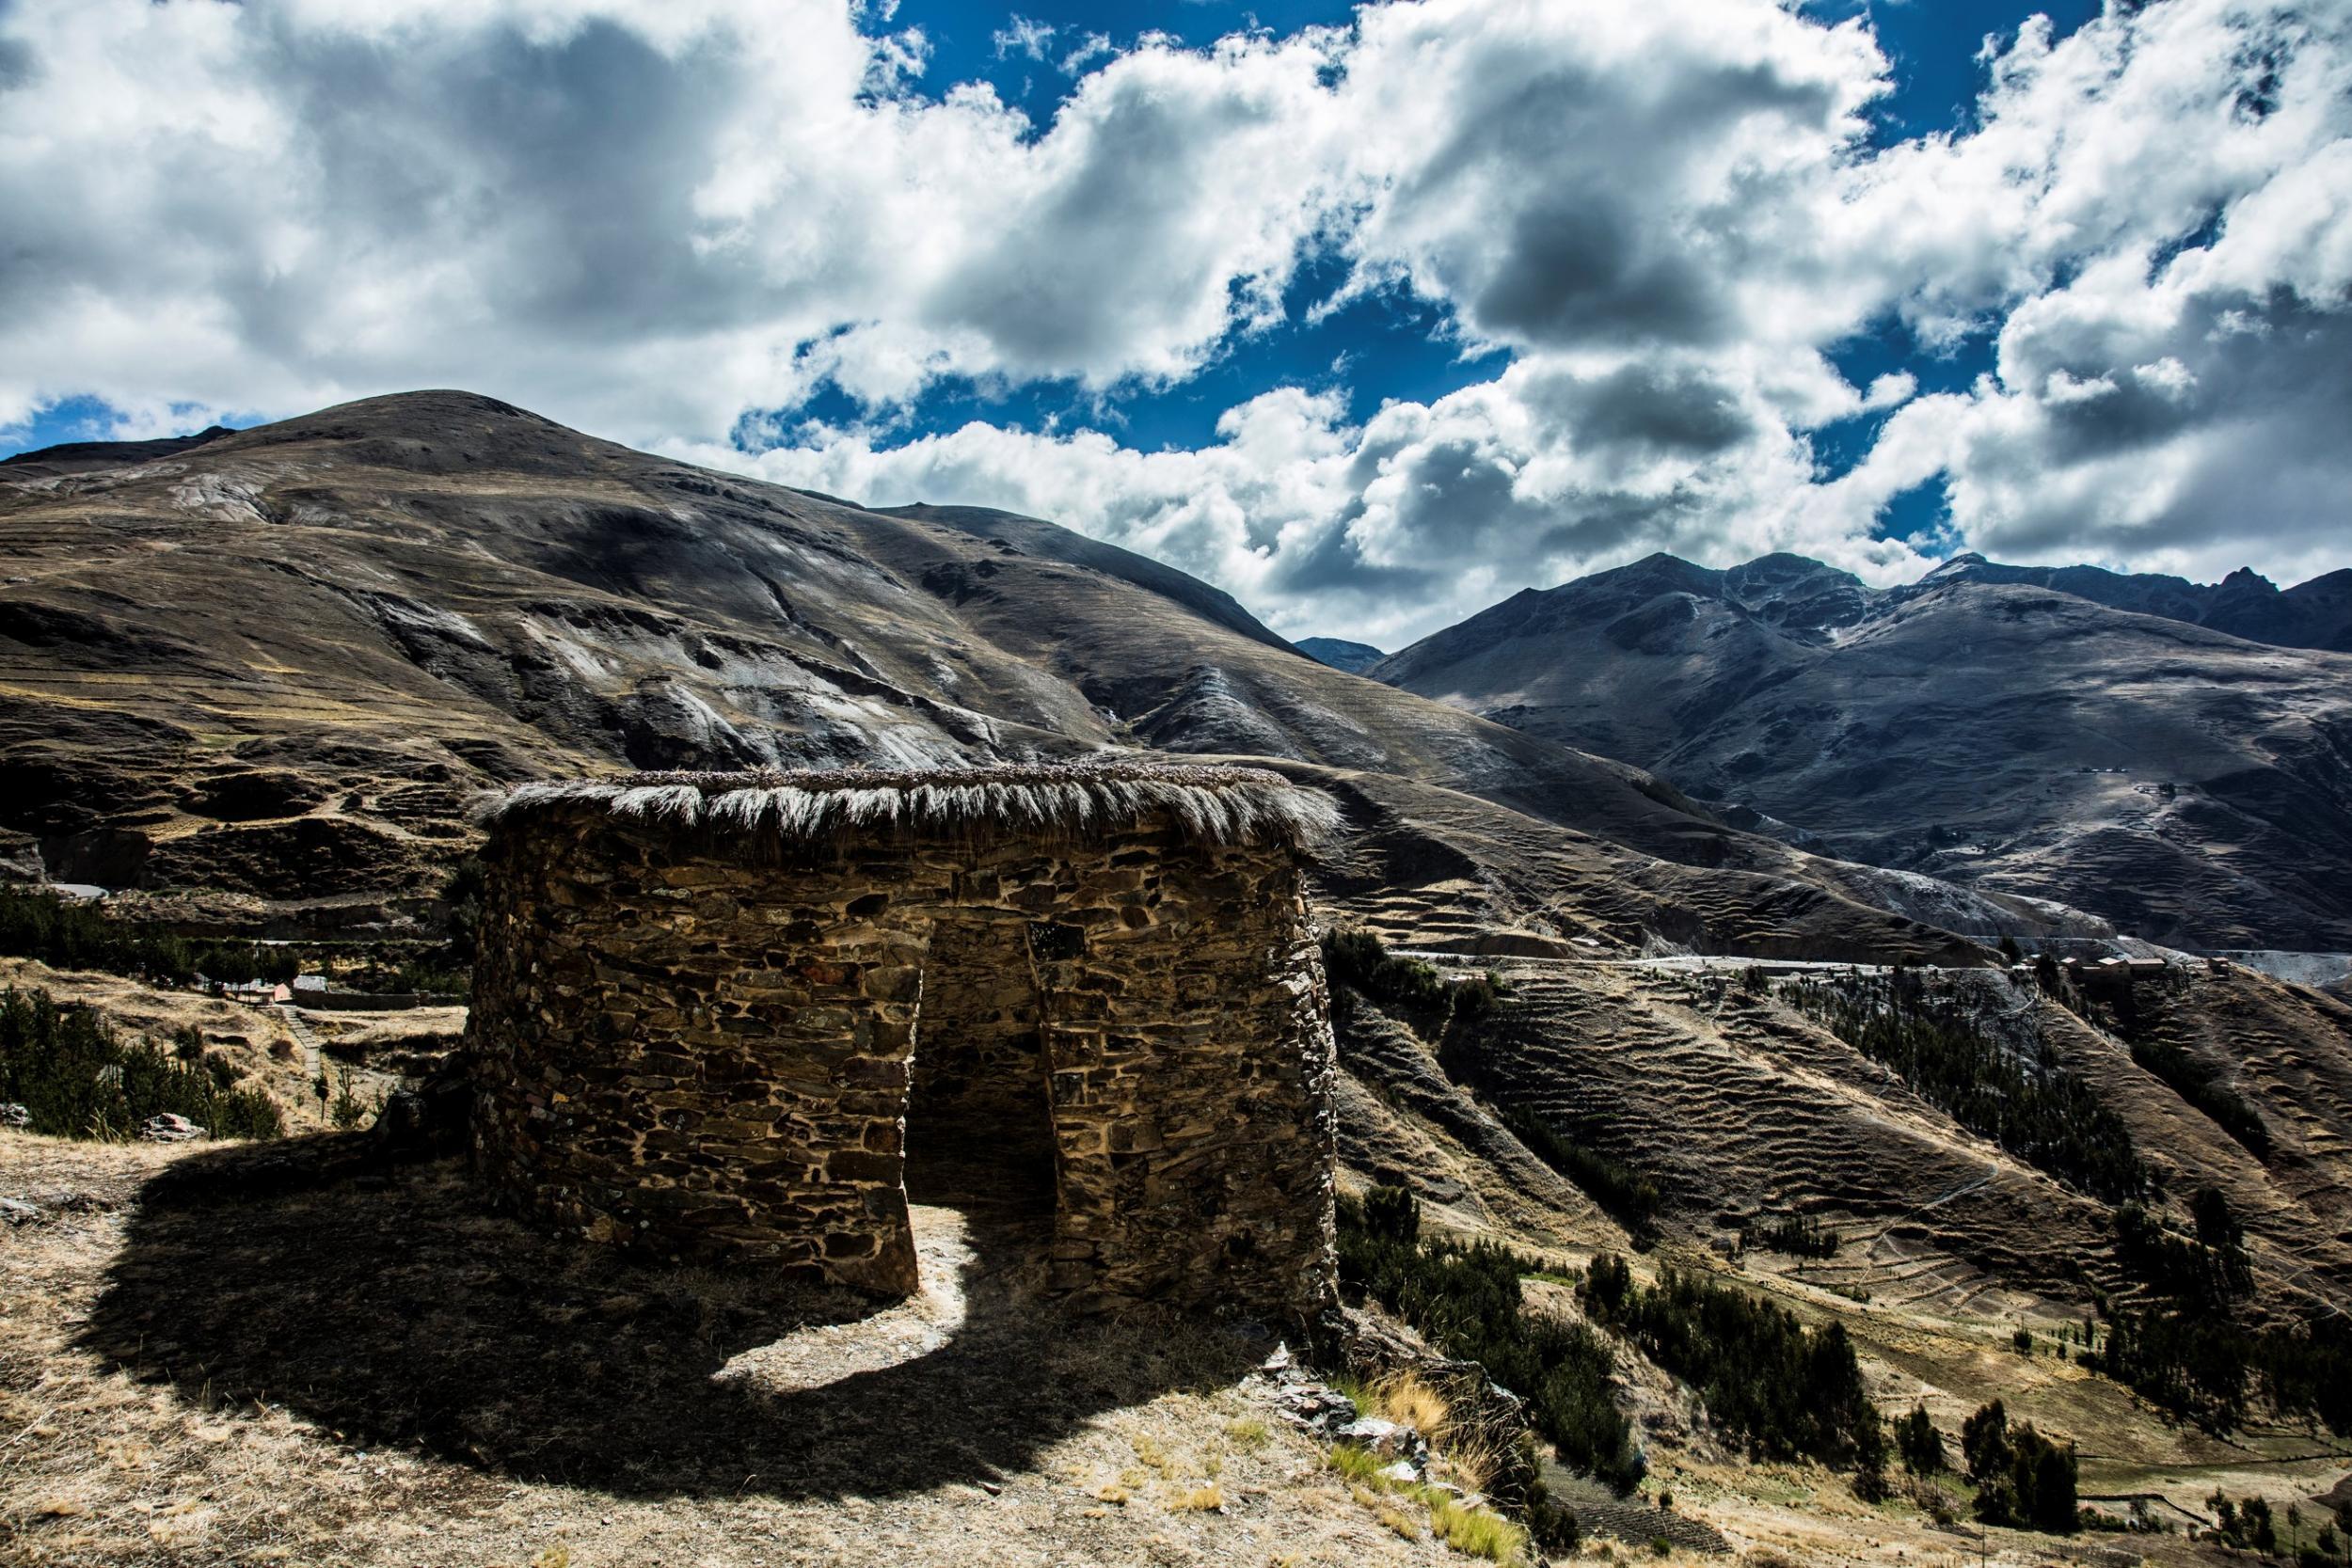 Explore the rural villages of Peru’s Lares region